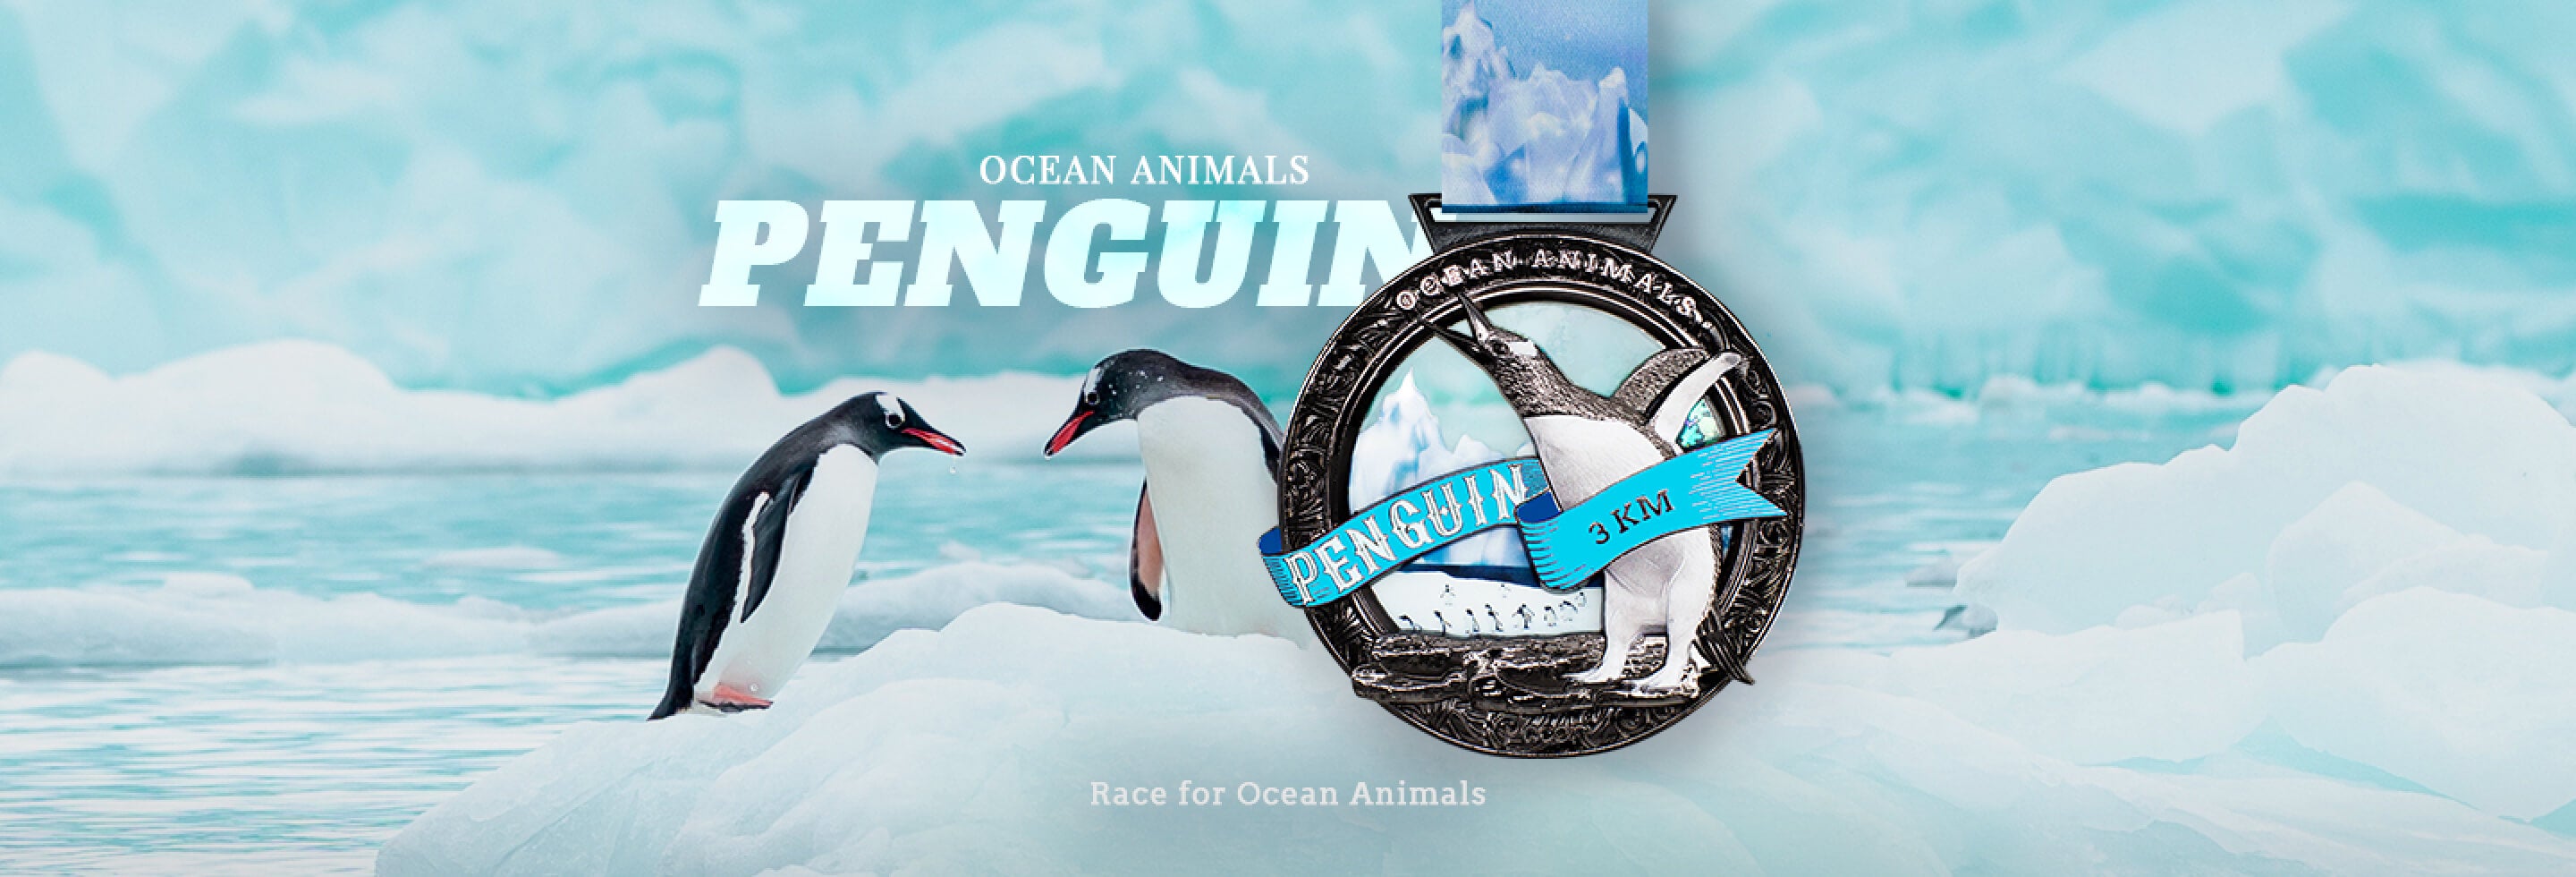 Race for Ocean Animals - Penguin 3km